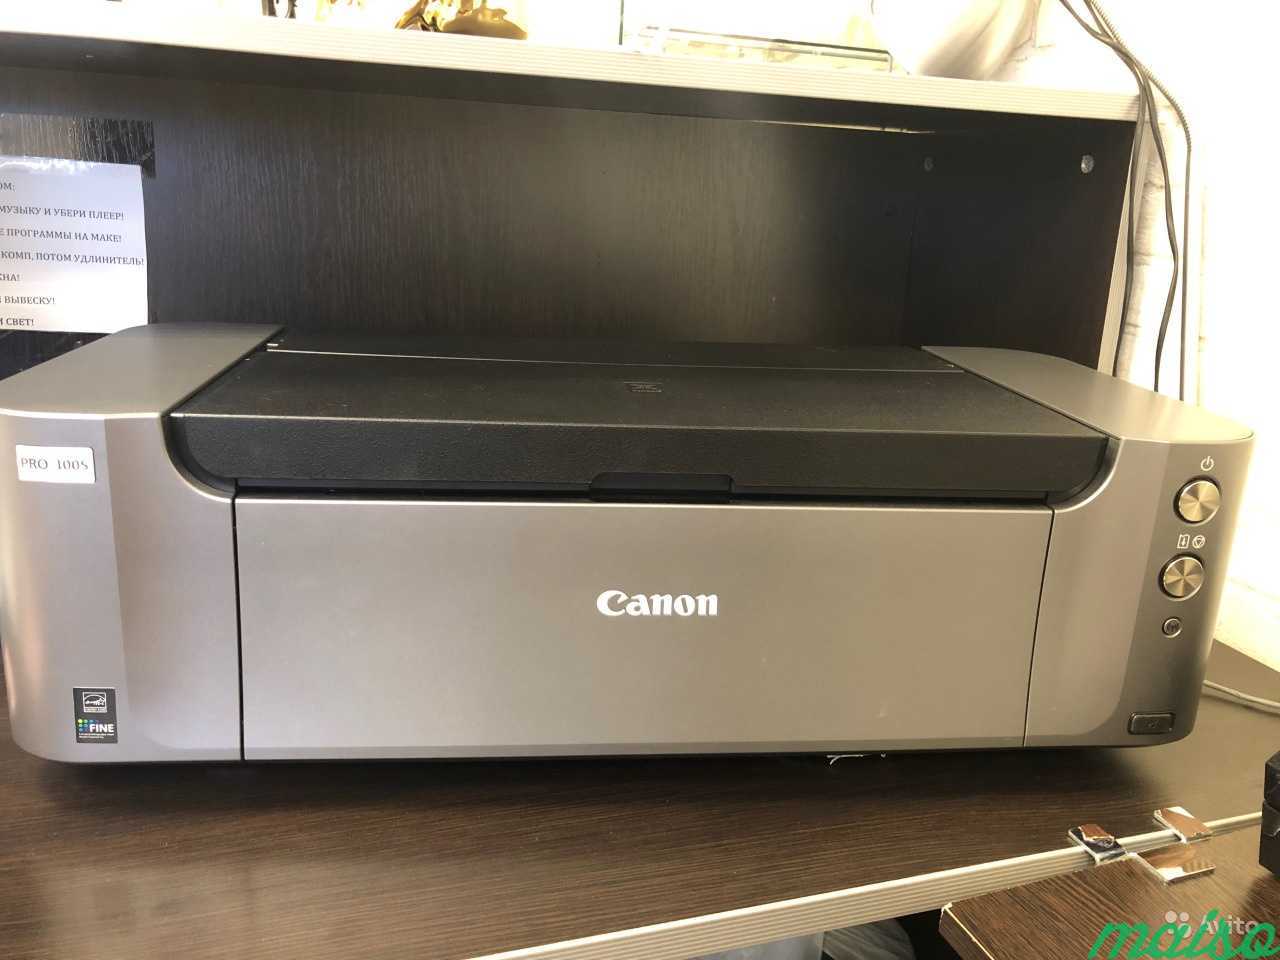 Купить принтер бу на авито. Авито принтер. Производственные принтеры Canon. Принтер Insta Pro. 226а принтер авито.